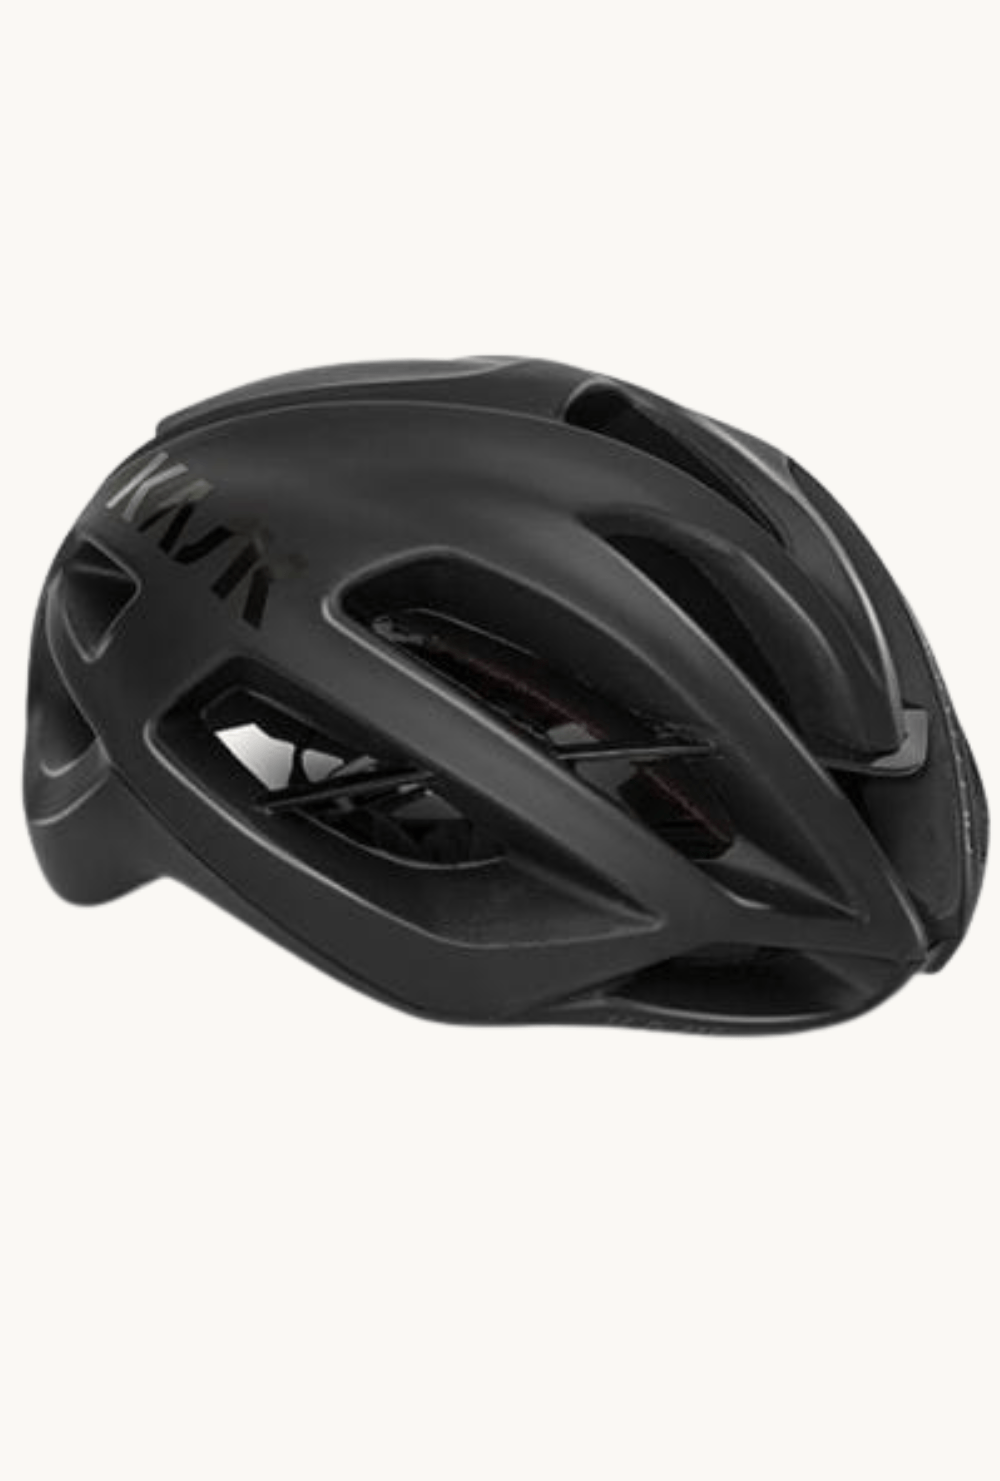 Helmet - Kask Protone Matt Blacksmall (50-56cm) / Matt Black